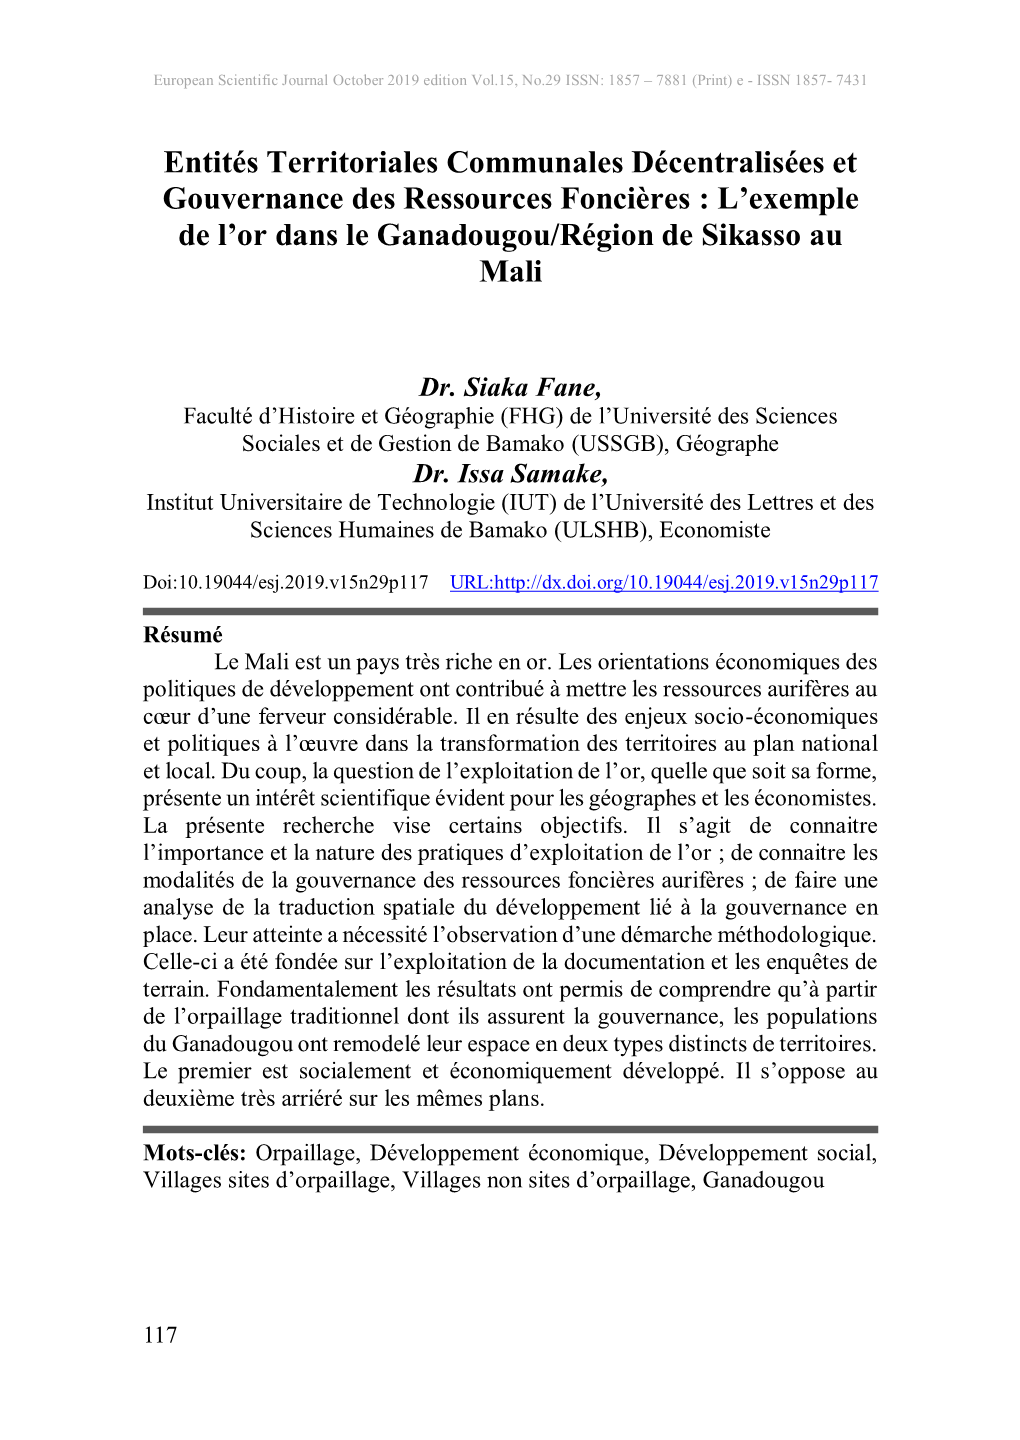 Entités Territoriales Communales Décentralisées Et Gouvernance Des Ressources Foncières : L’Exemple De L’Or Dans Le Ganadougou/Région De Sikasso Au Mali